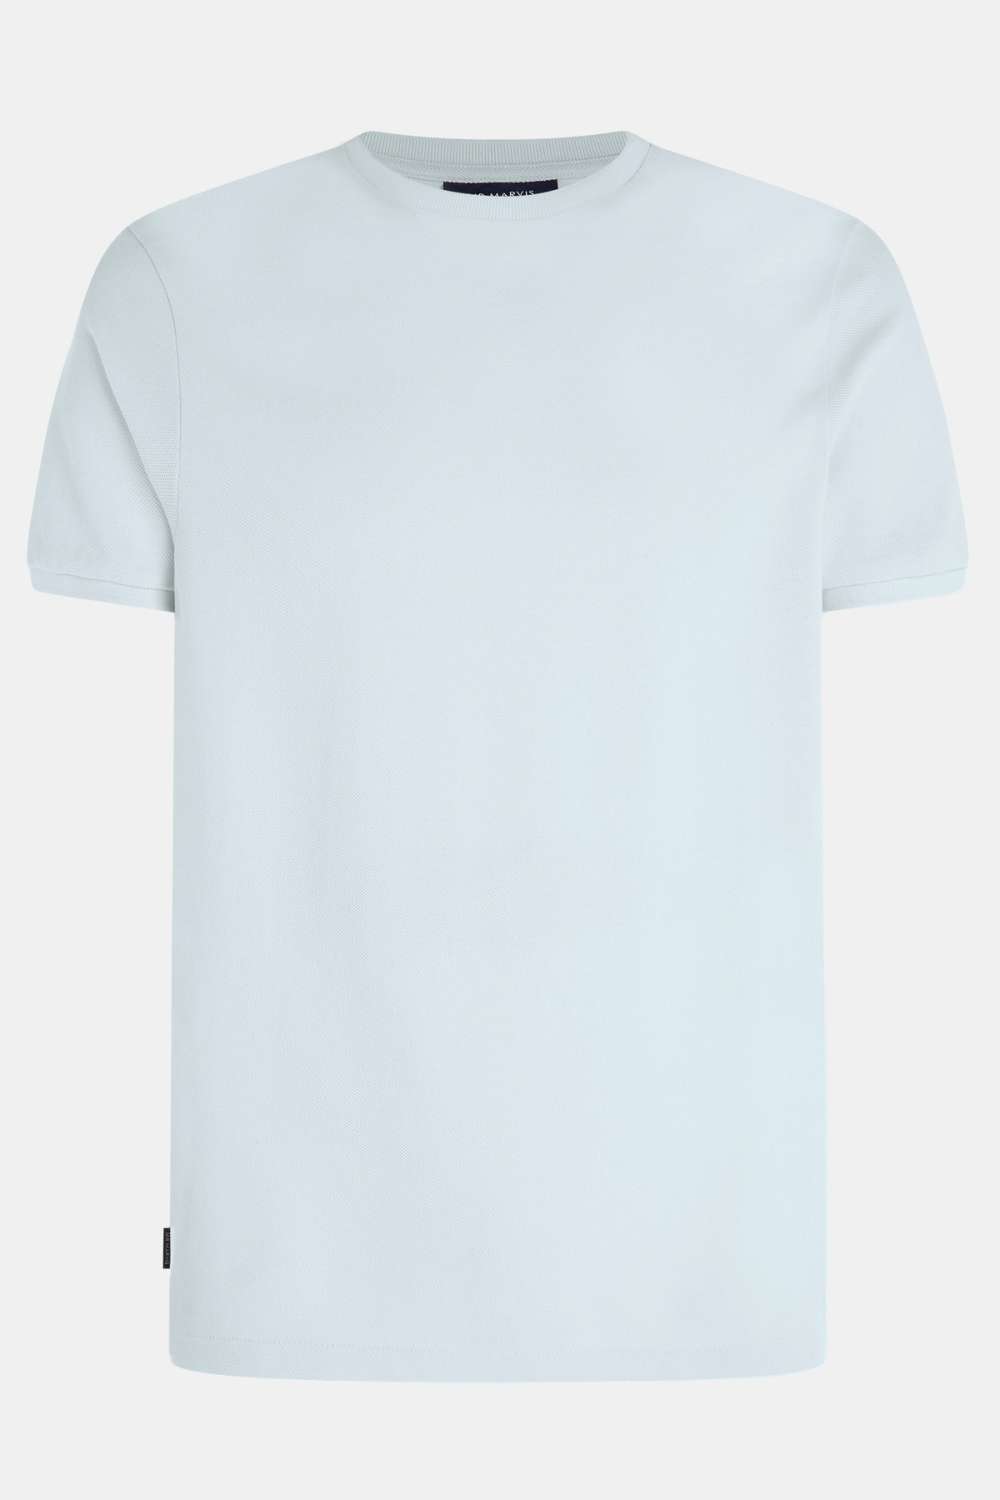 Avenues - T-shirt Piqué